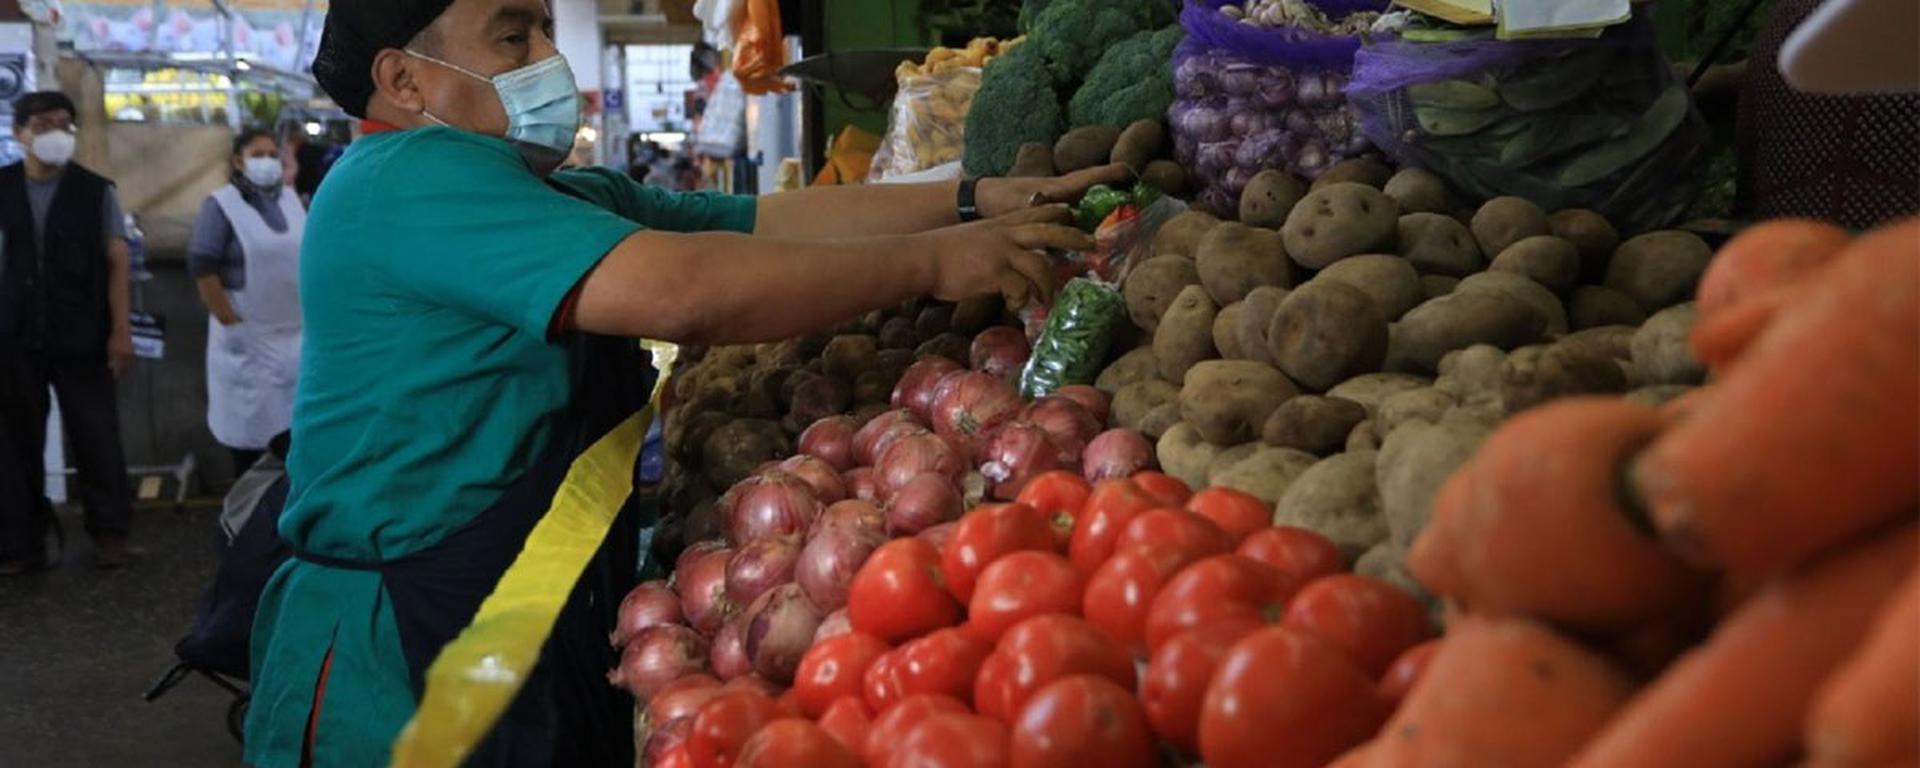 Precios de alimentos continúan subiendo en Mercado Mayorista de Lima